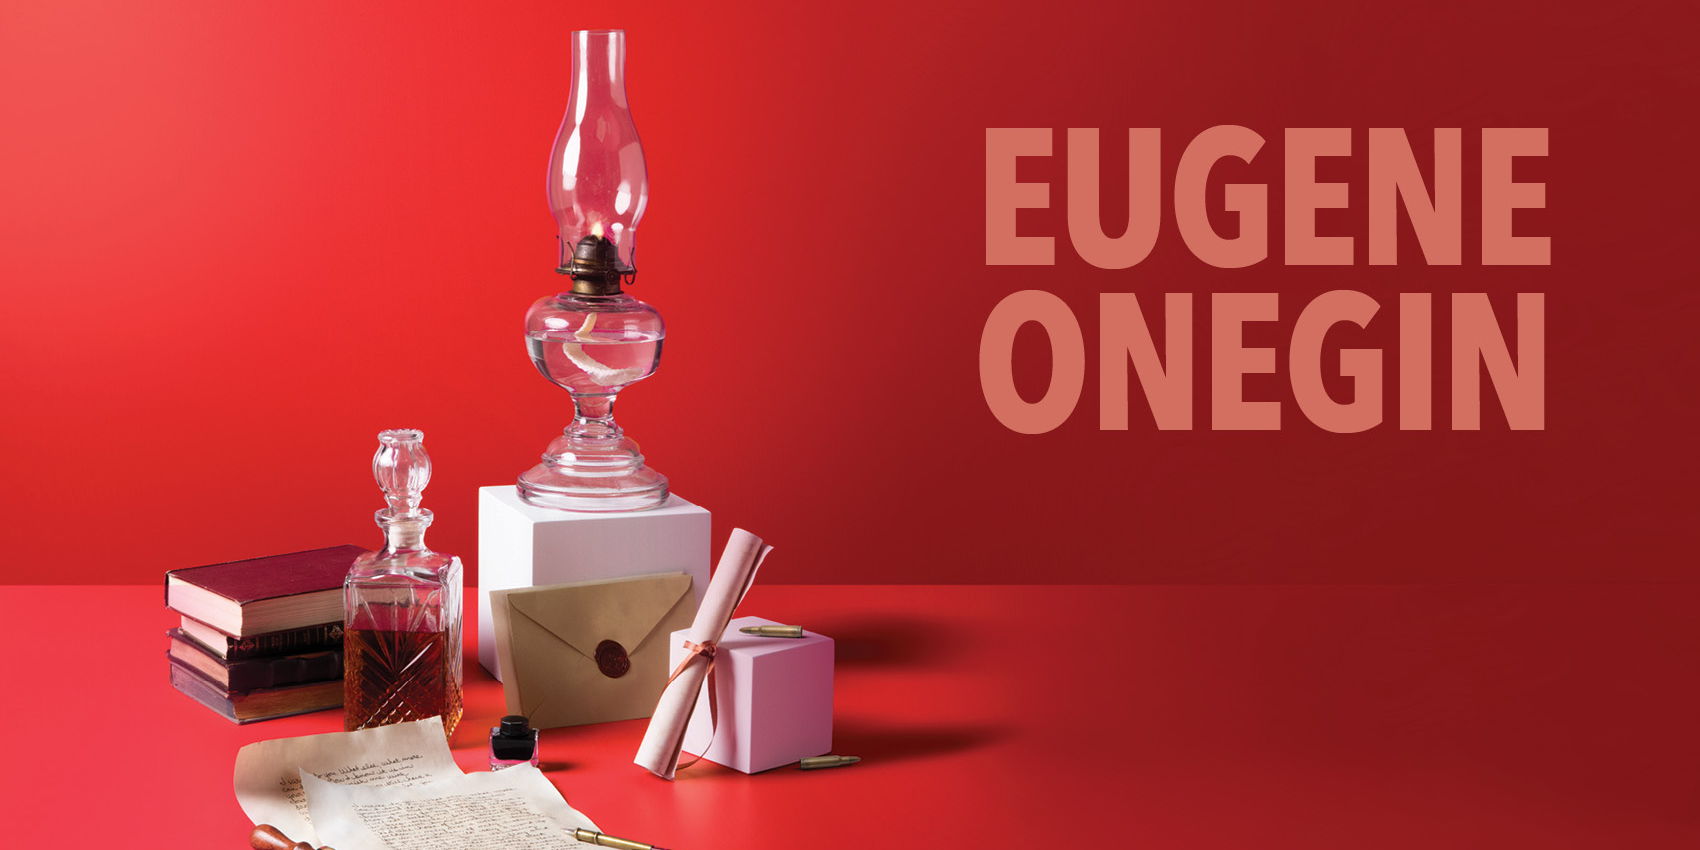 Eugene Onegin promotional image